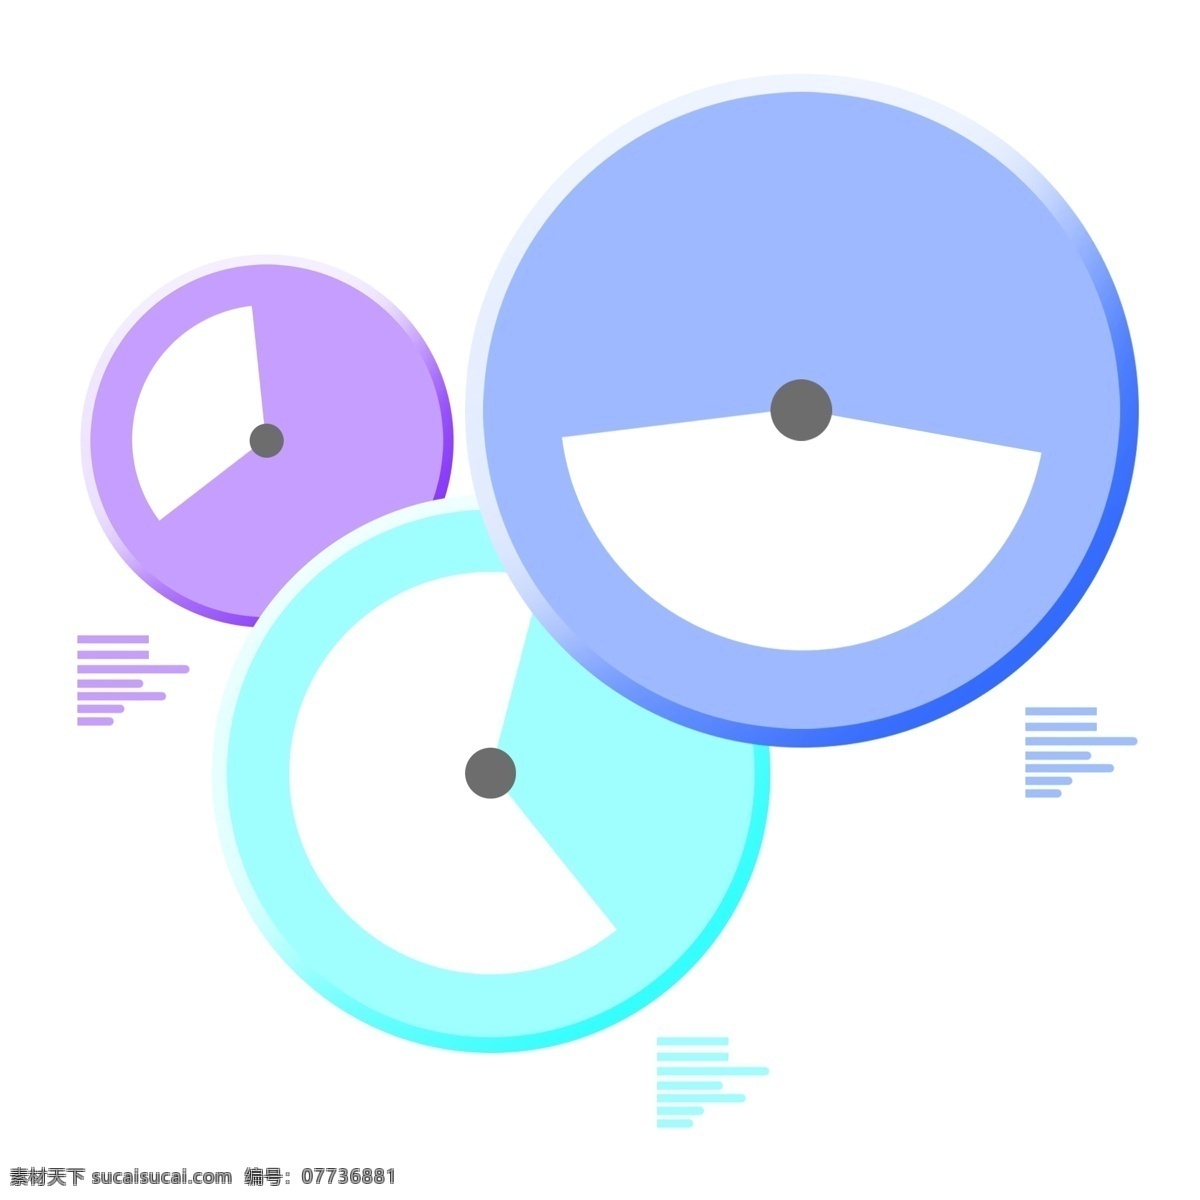 三 色 圆盘 装饰 插图 紫色圆盘 蓝色圆盘 绿色圆盘 圆盘装饰 卡通圆盘 黑色圆点 团爱设计 平面设计